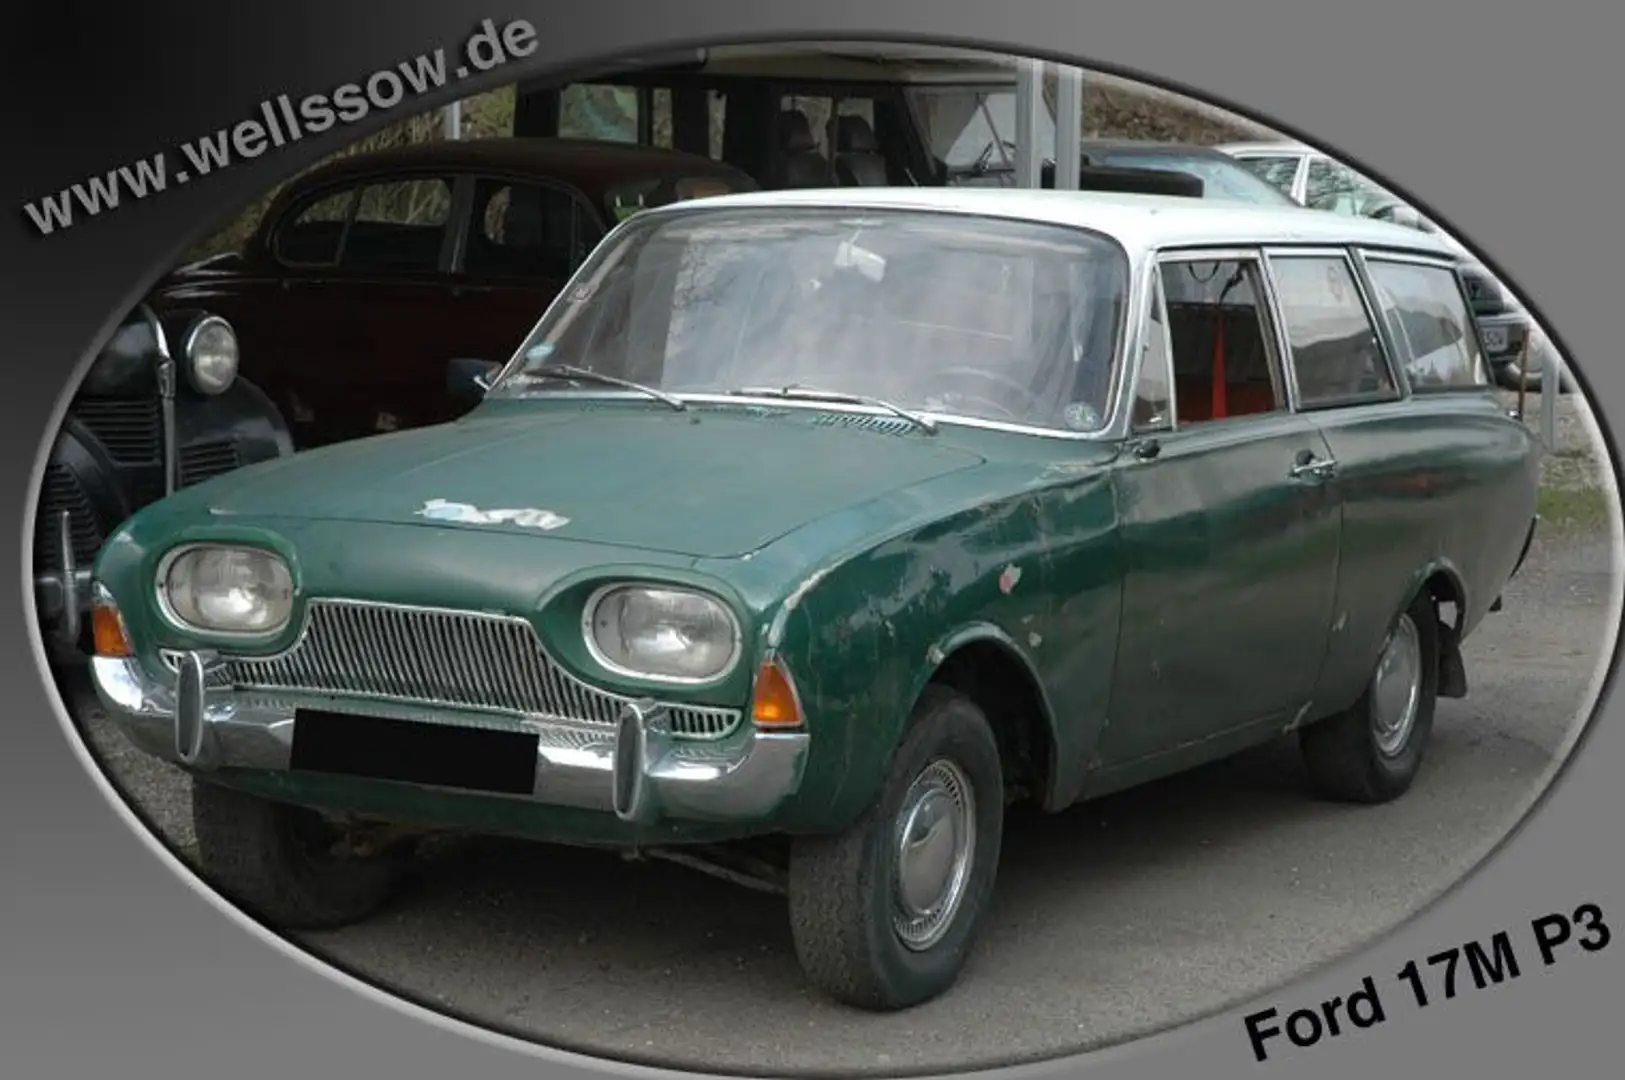 Ford Taunus 17m P3 Kombi Badewanne Scheunenfund Yeşil - 1